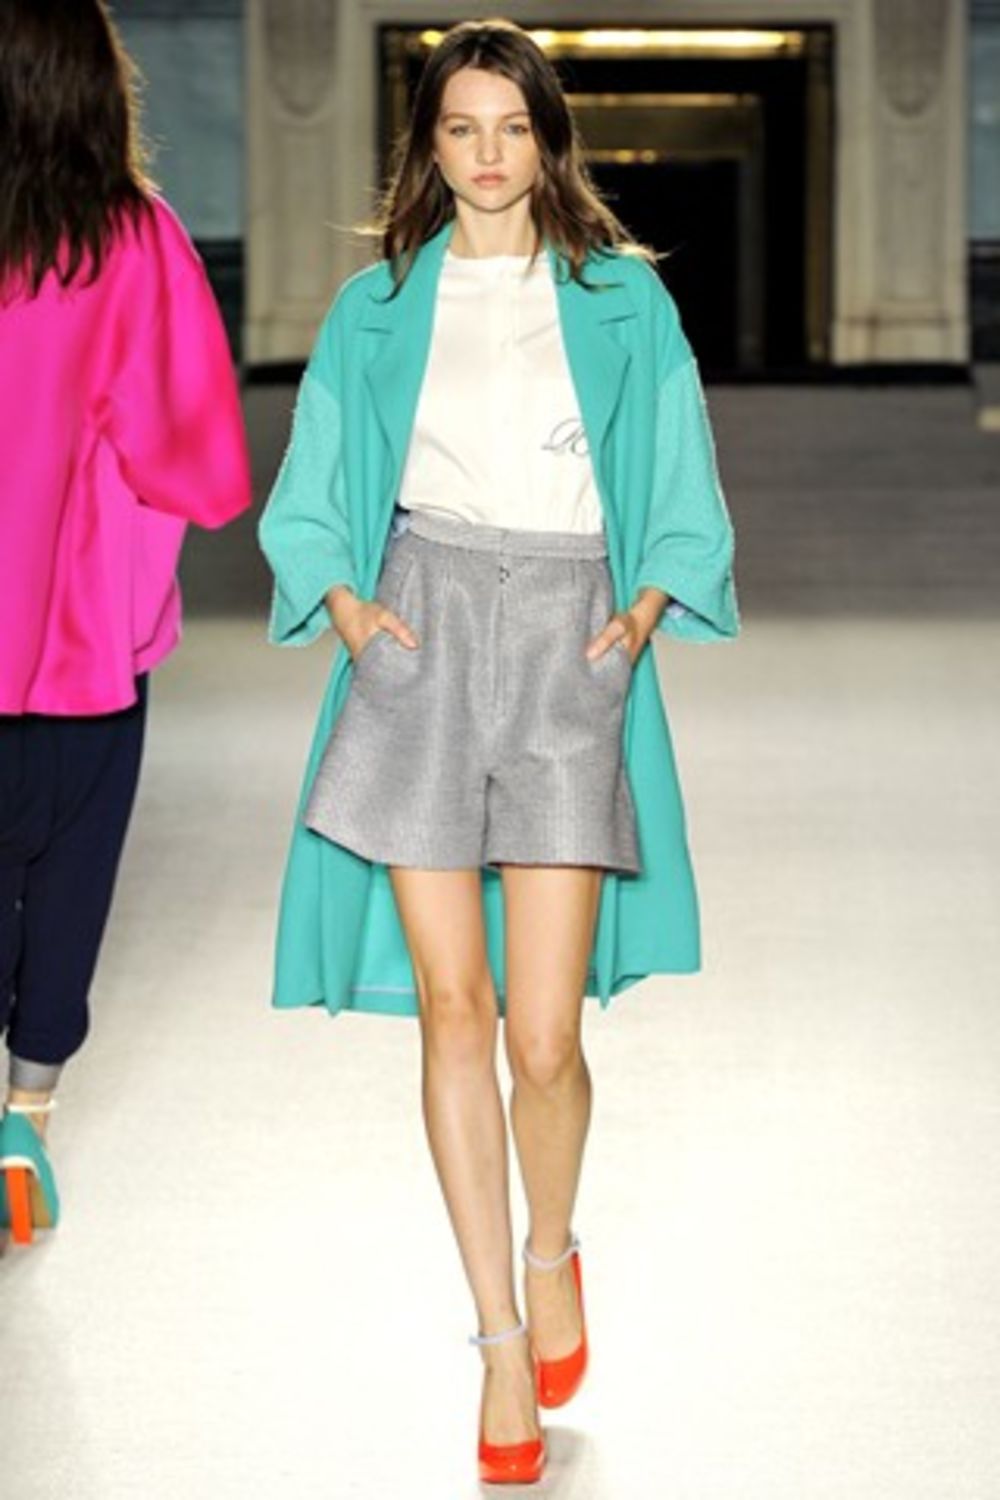 Najnovija kolekcija beogradske dizajnerke Roksande Ilinčić na londonskoj nedelji mode pokupila je samo salve pohvala. Kako piše britanski Vogue, naša kreatorka do te mere je fascinirala Anu Vintur da ona trenutno sa njom pregovara oko toga da se deo ove kolekc